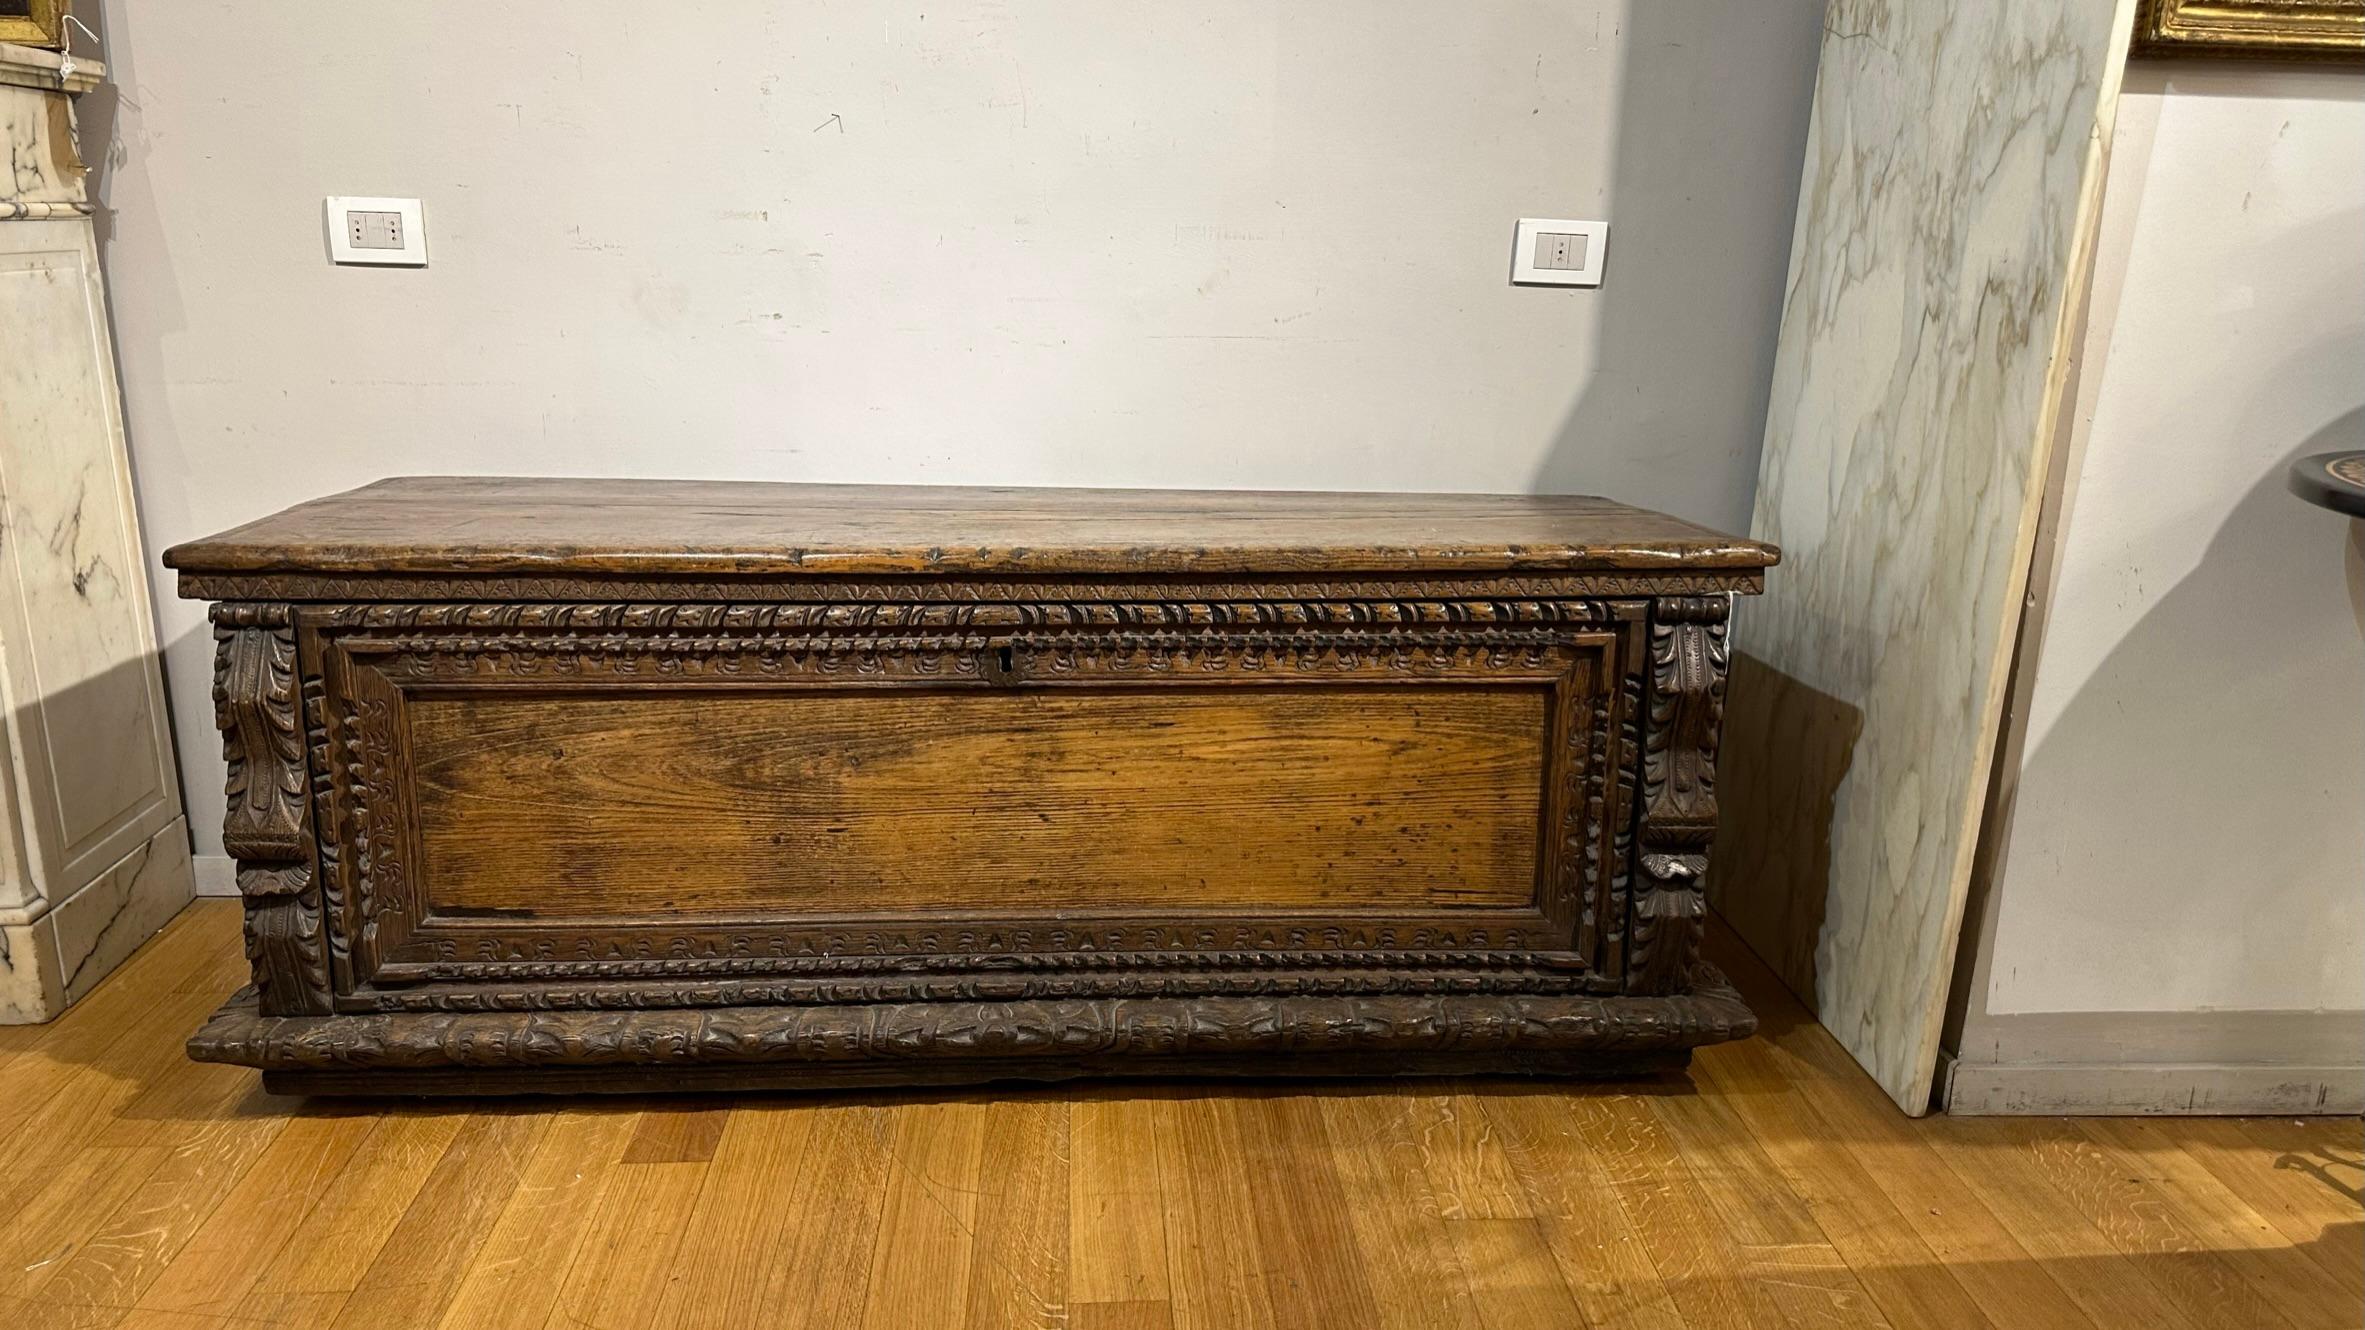 Bei der Truhe handelt es sich um ein elegantes Möbelstück, das vollständig aus Kastanienholz gefertigt ist. Seine Herstellung geht auf die Renaissance, etwa die zweite Hälfte des 16. Jahrhunderts, durch toskanische Kunsthandwerker zurück. Die Truhe